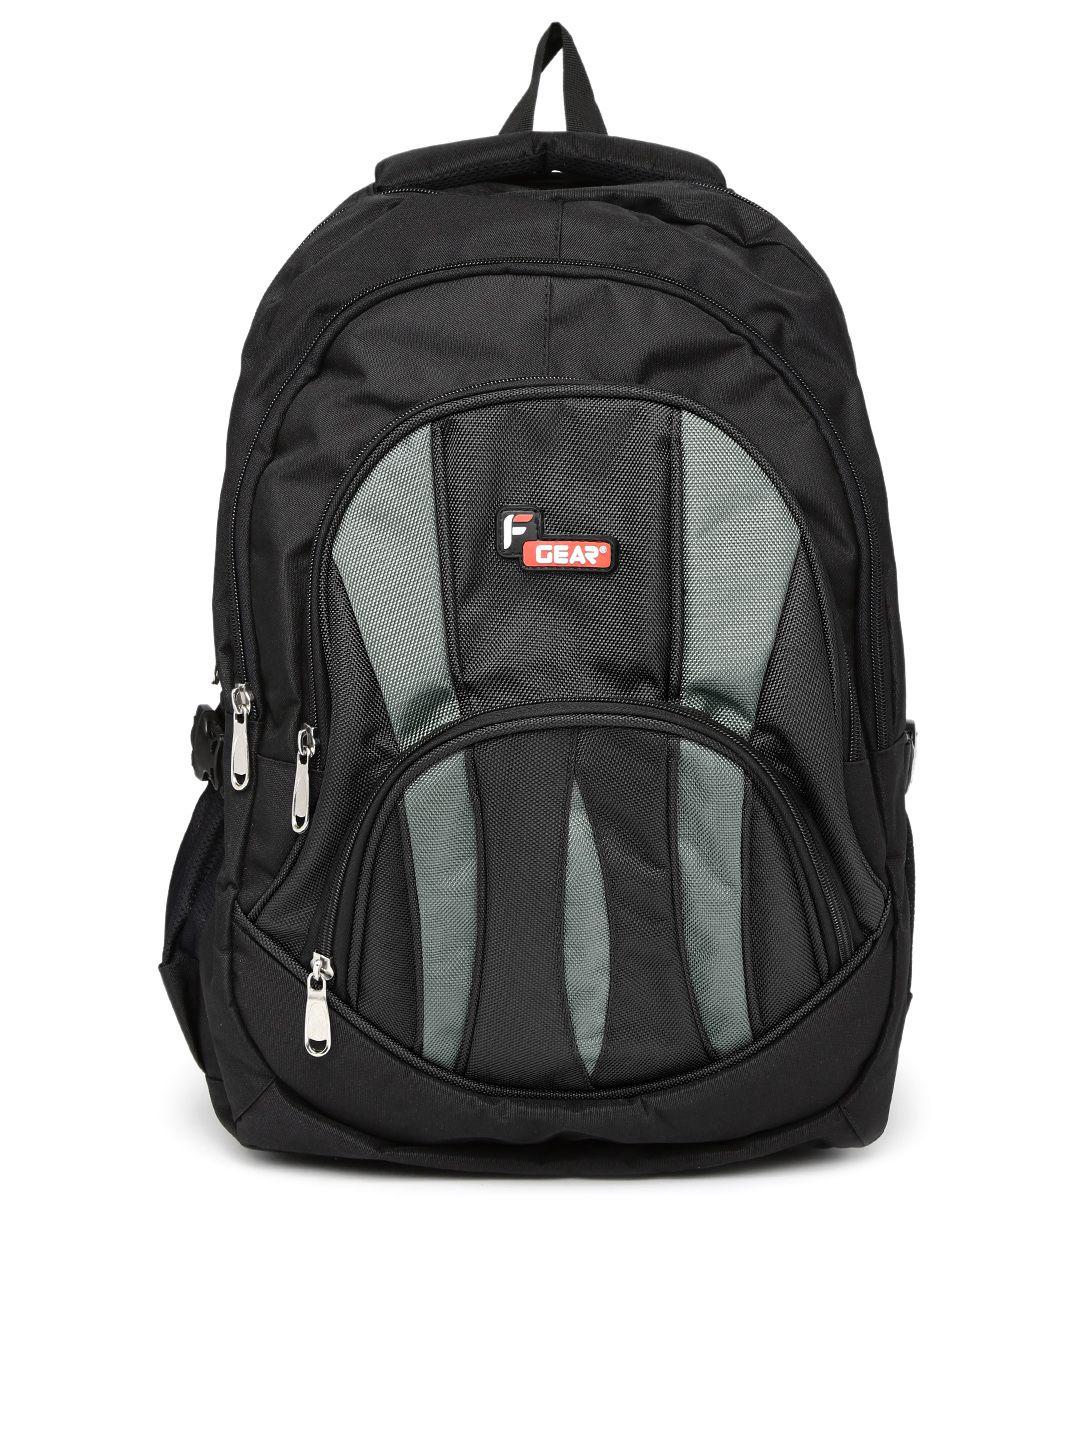 f gear unisex black & grey adios backpack